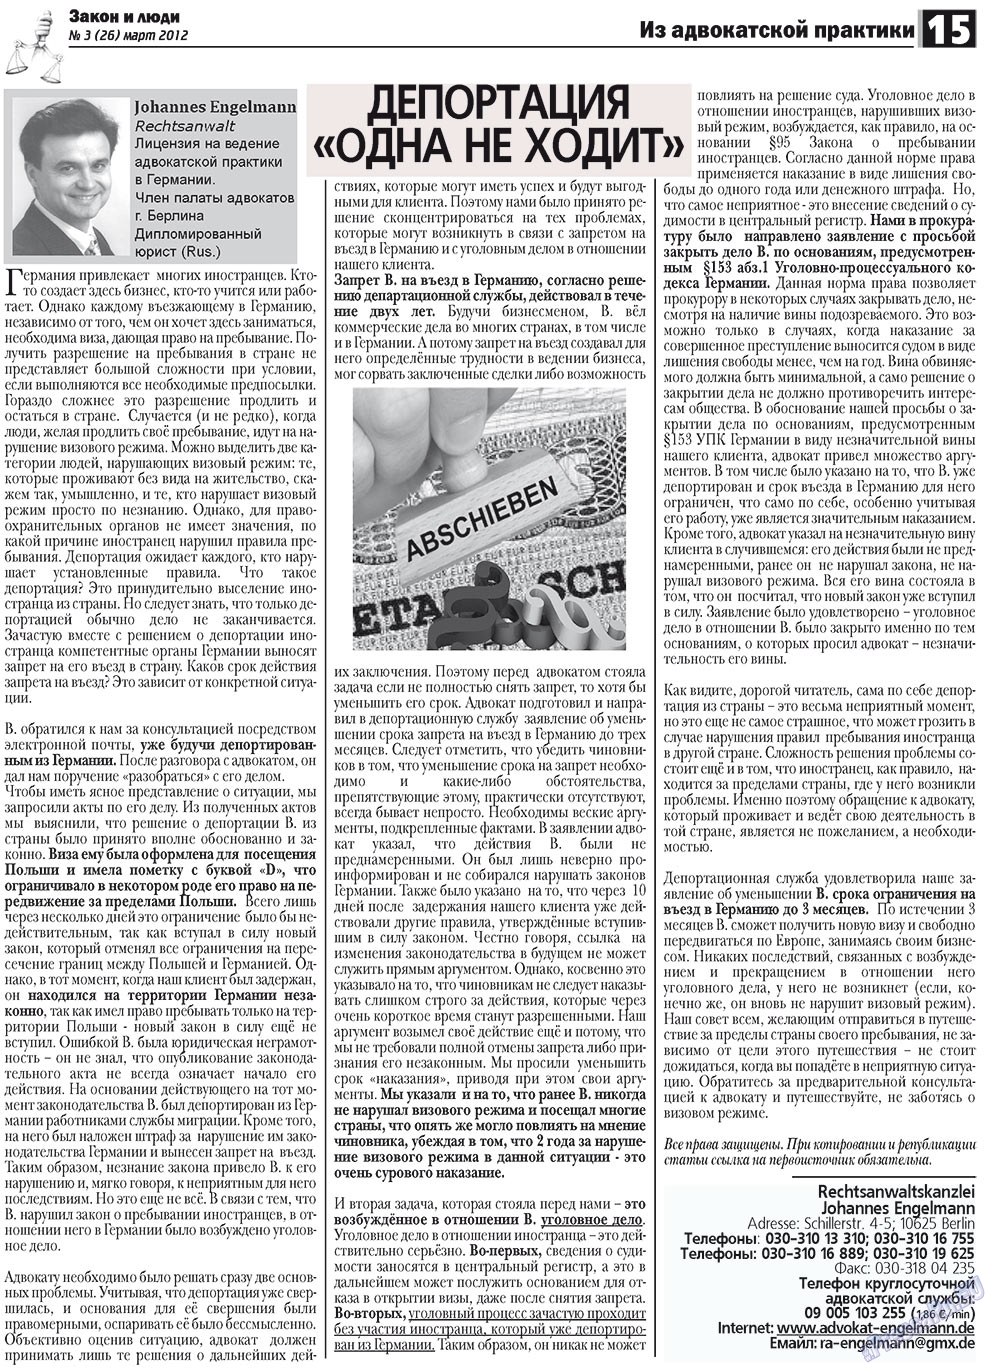 Закон и люди, газета. 2012 №3 стр.15